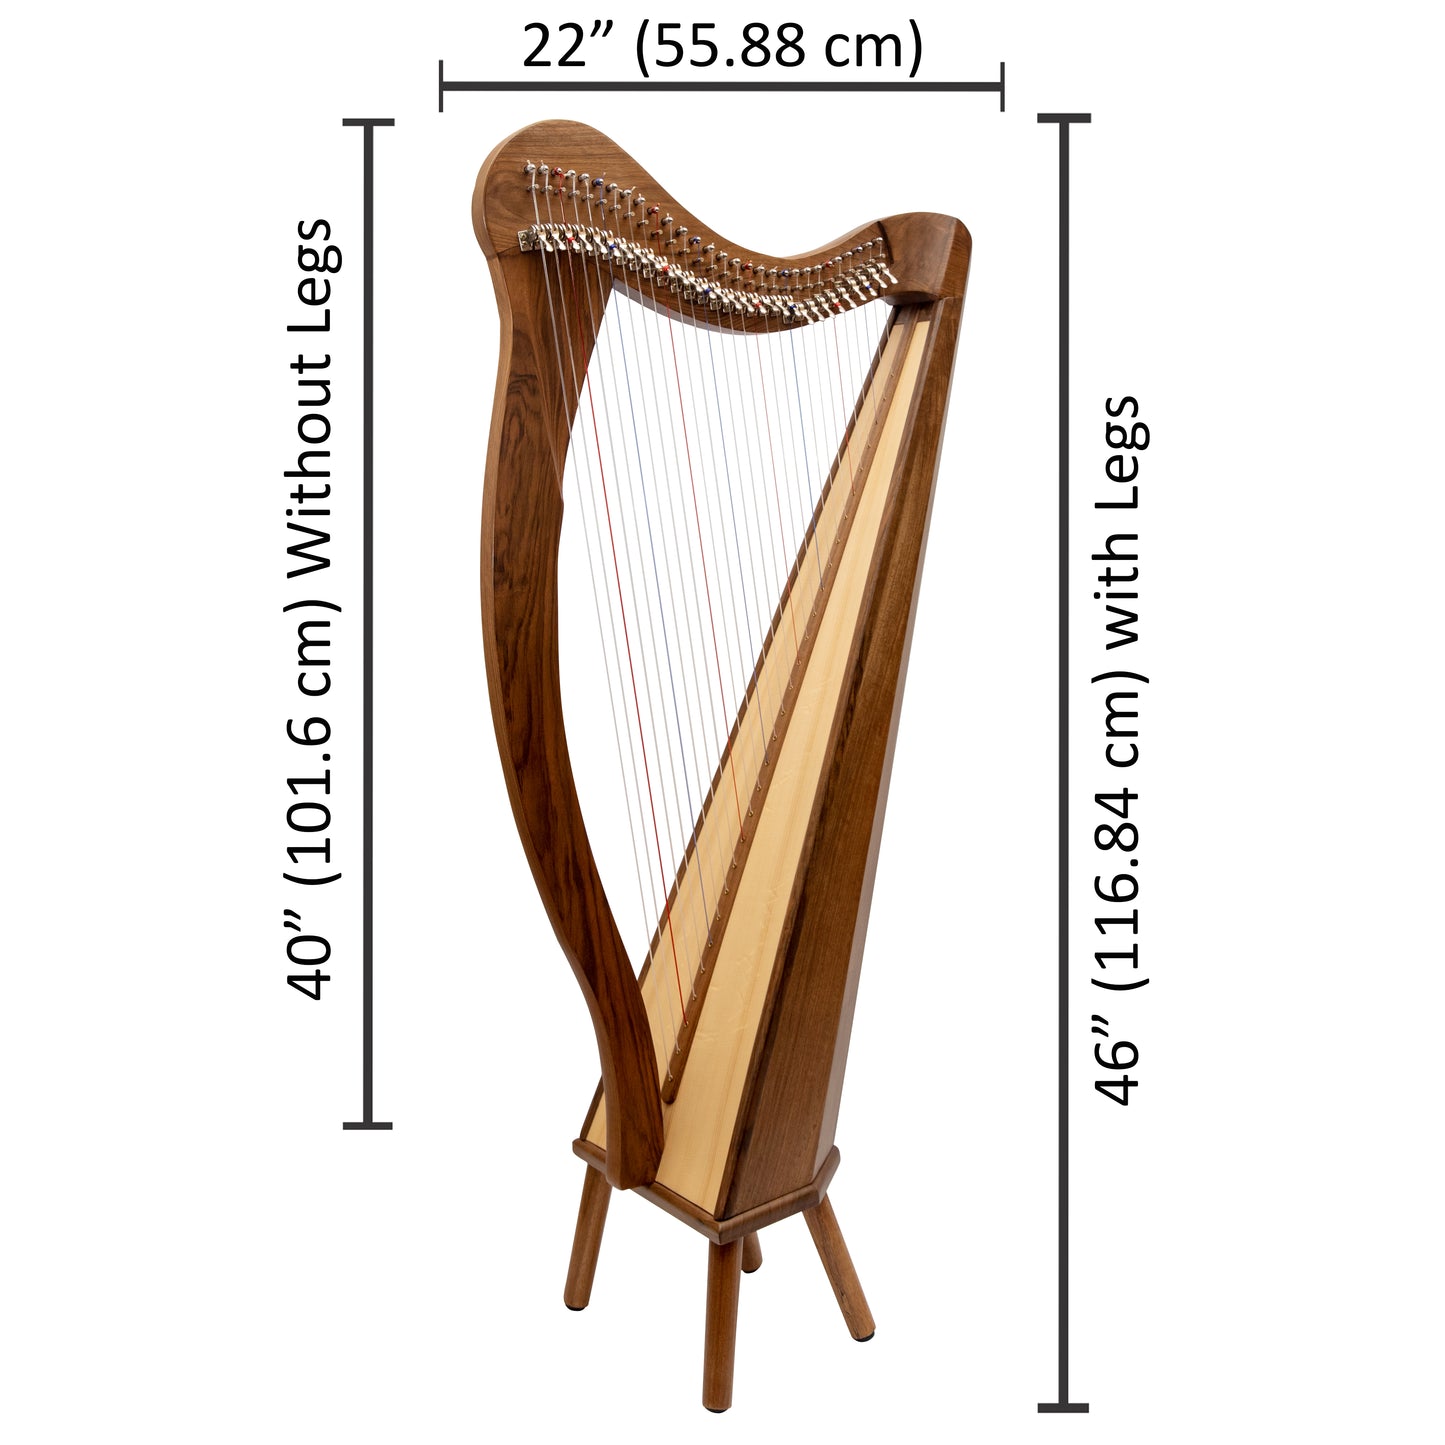 Muzikkon 29 String Ard Ri Harp Walnut